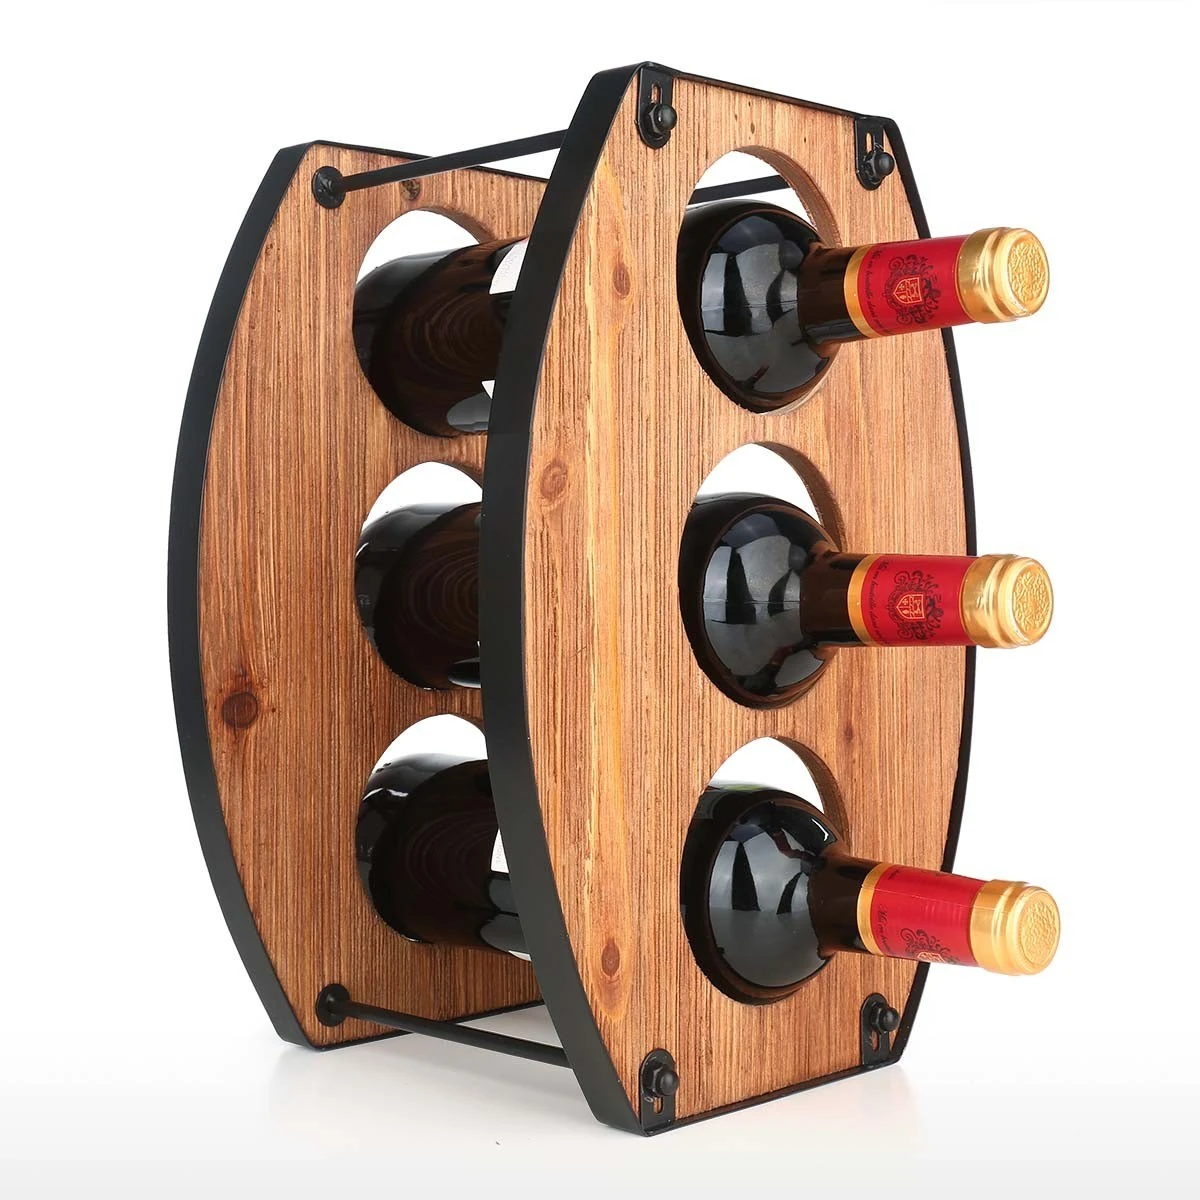 Viinipulloteline säilyttää 3 pulloa viiniä samassa kuin yksi pullo main variant image